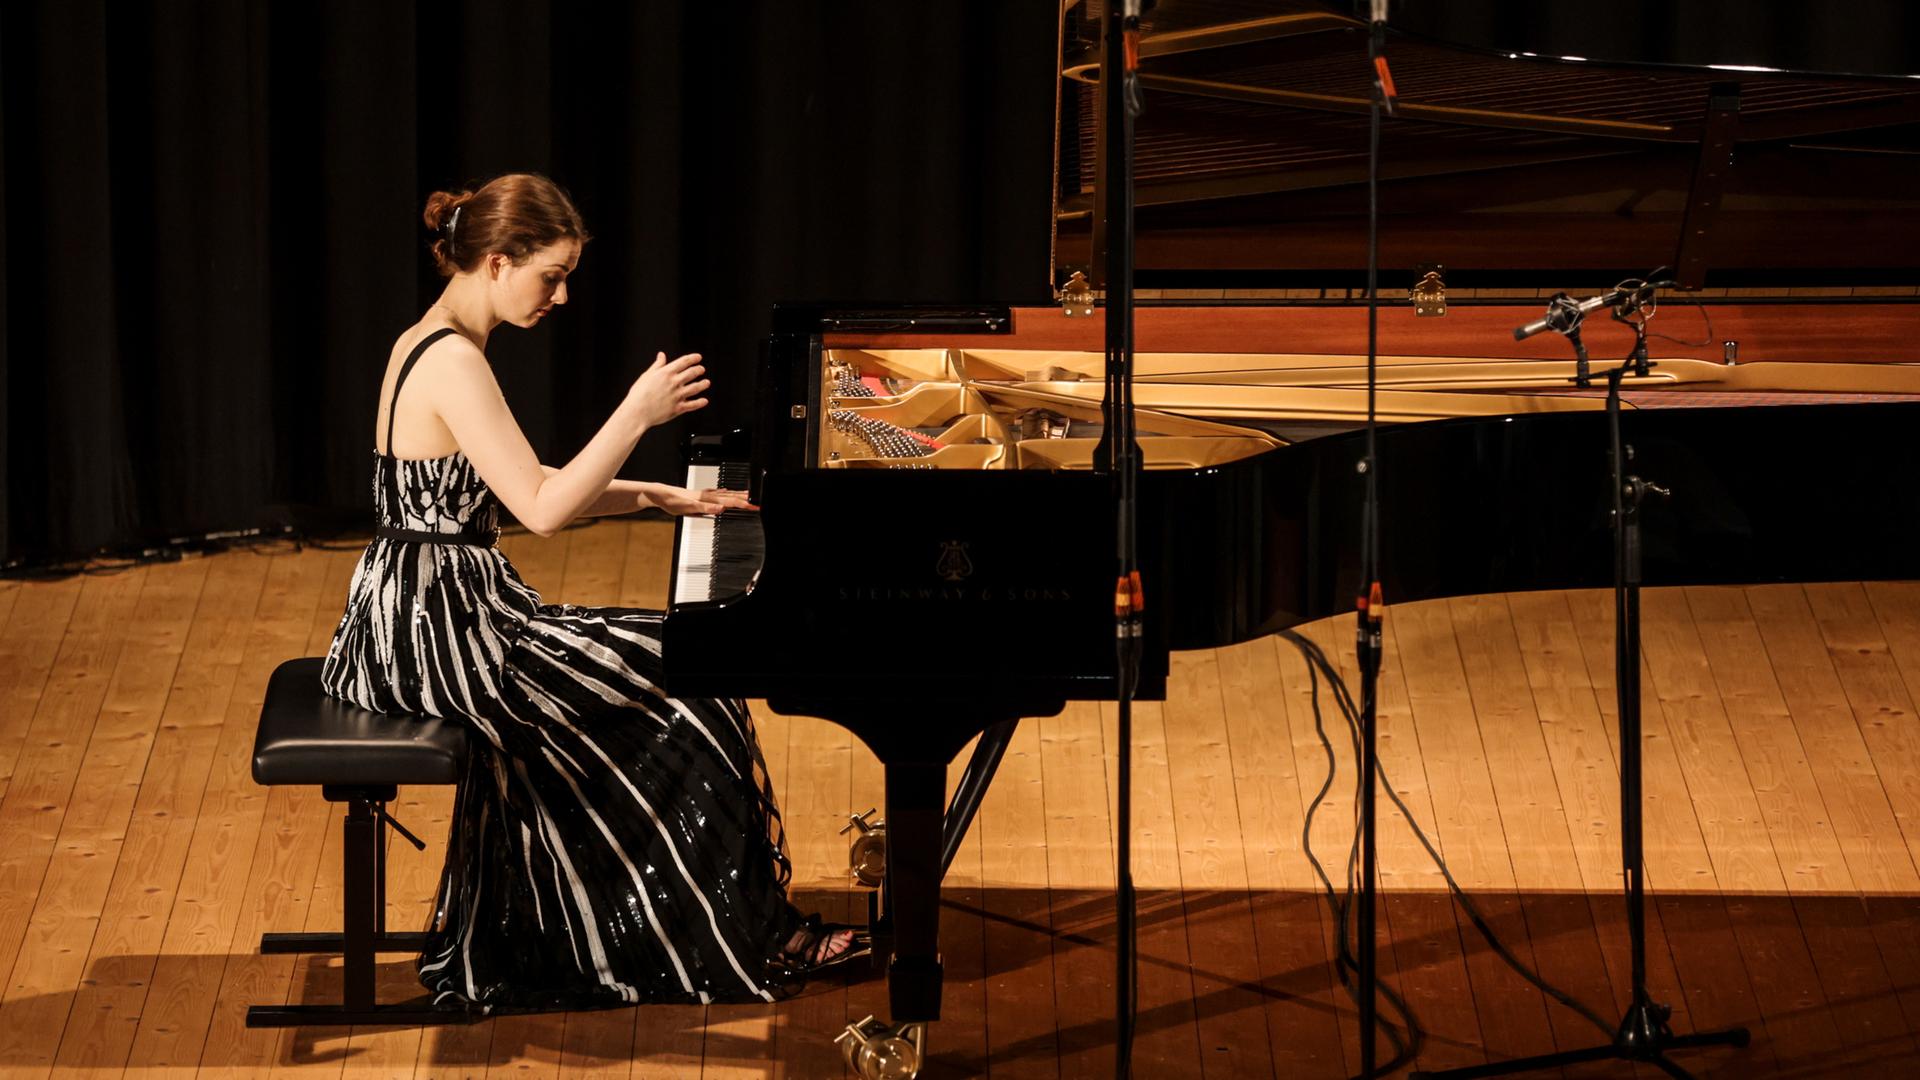 Eine junge Pianistin sitzt an einem schwarzen Konzertflügel. Eine Hand liegt auf den Tasten, die andere hebt sie gerade hoch. Sie trägt ein schwarz weiß gestreiftes Kleid und hat rotbraune Haare.